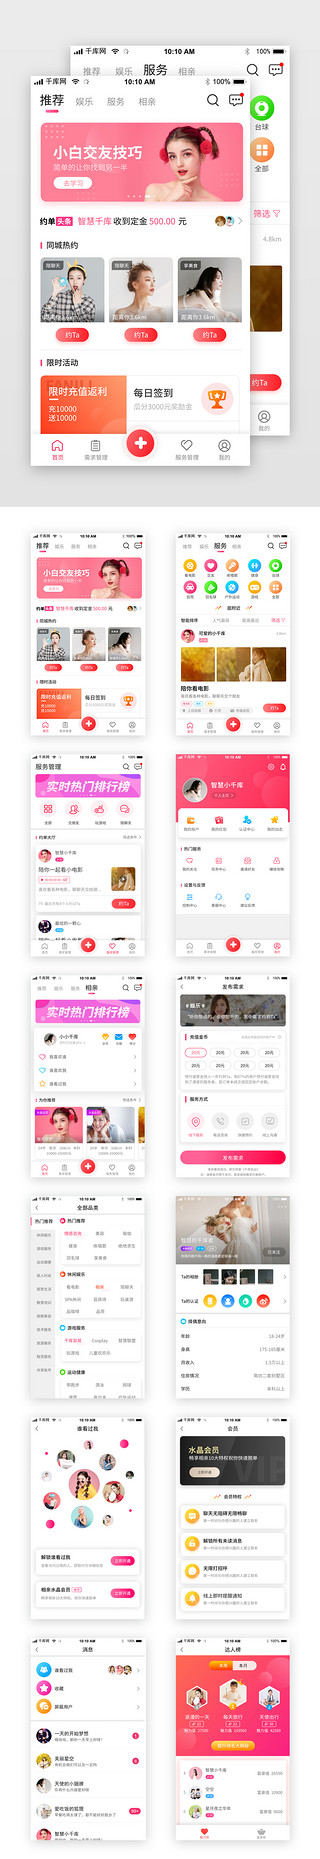 语音交友网站UI设计素材_粉色交友社交婚恋app套图界面